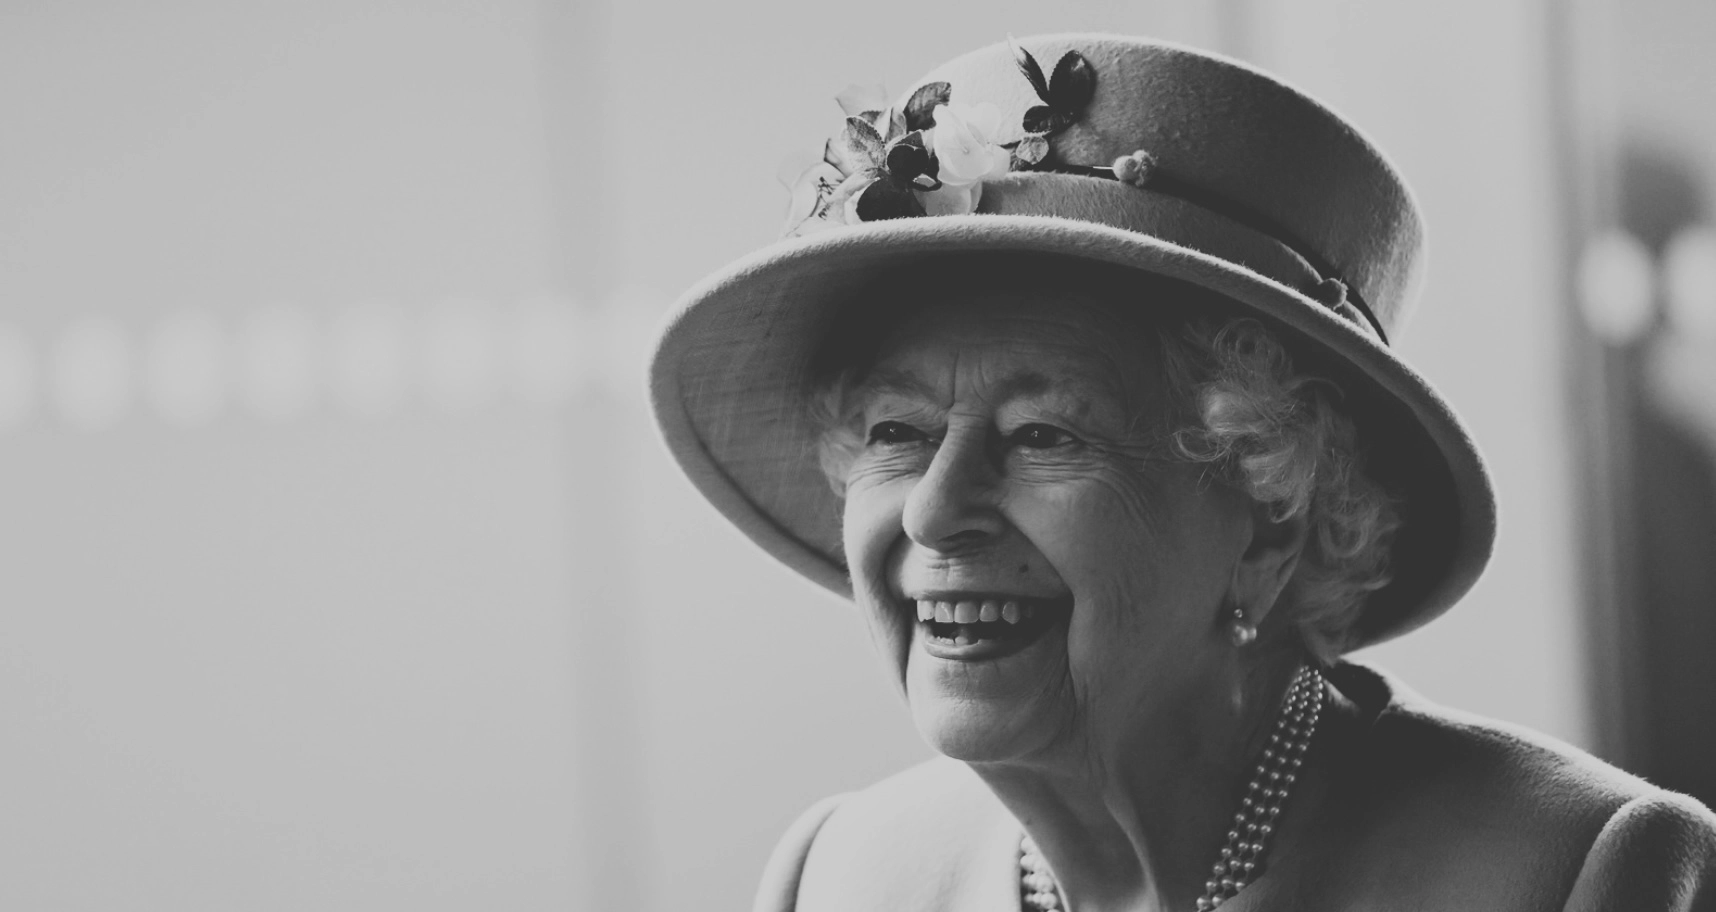 Kicsit bizarr, hogy Erzsébet királynő koporsója már 30 éve elkészült, így az uralkodó már életében alaposan szemügyre vehette azt.